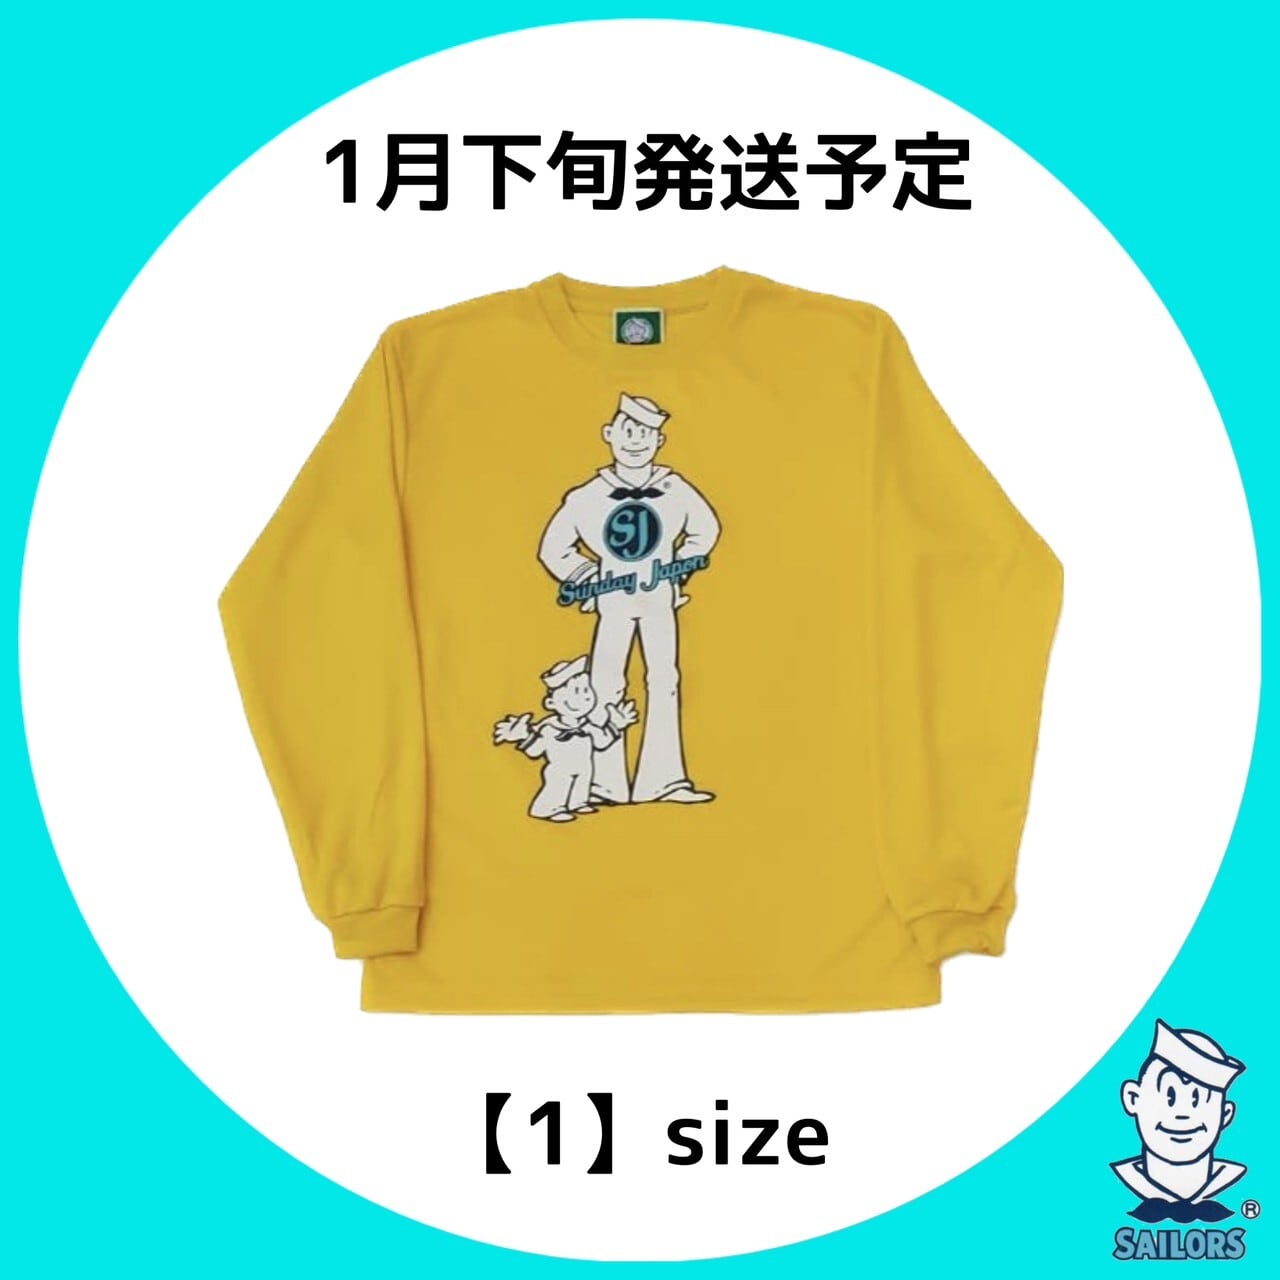 今期 RONI セーラー Tシャツ 黄色 Sこちら2500円は厳しいですか